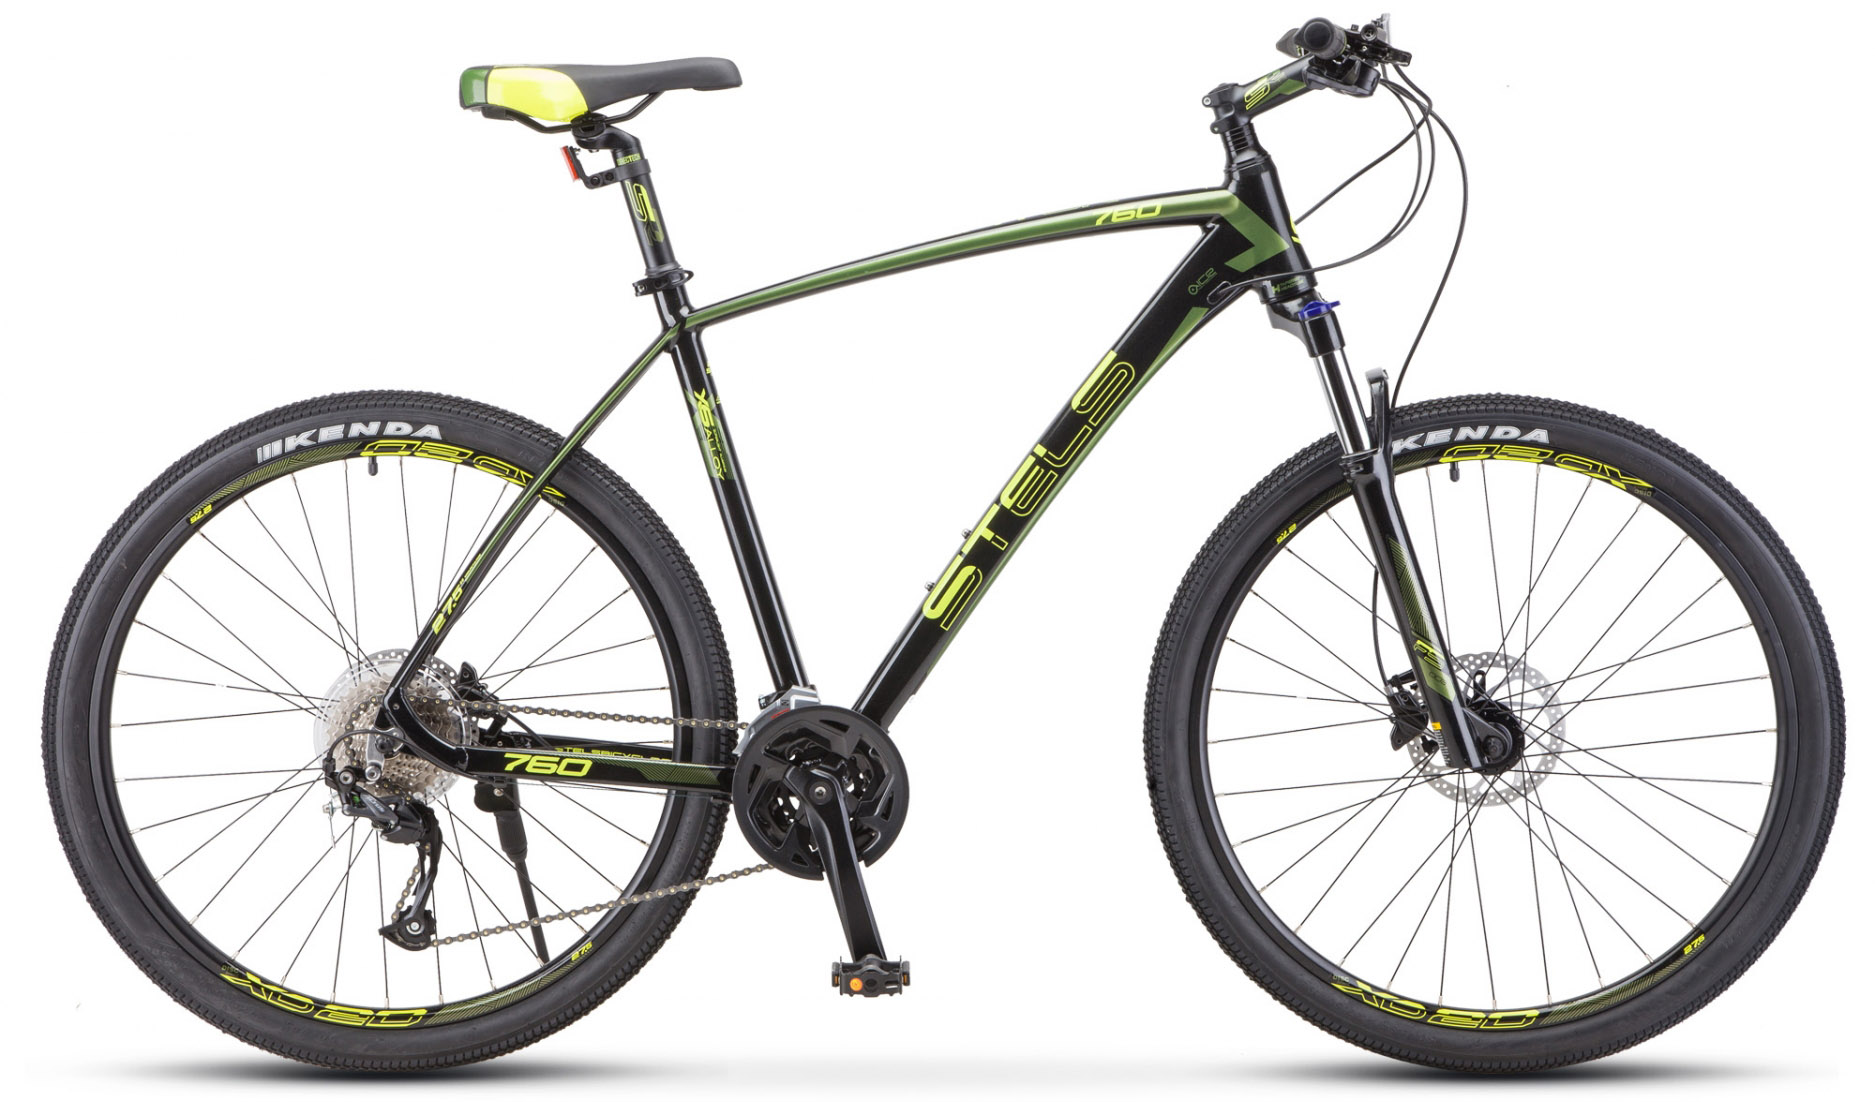  Отзывы о Горном велосипеде Stels Navigator 760 D V010 2020